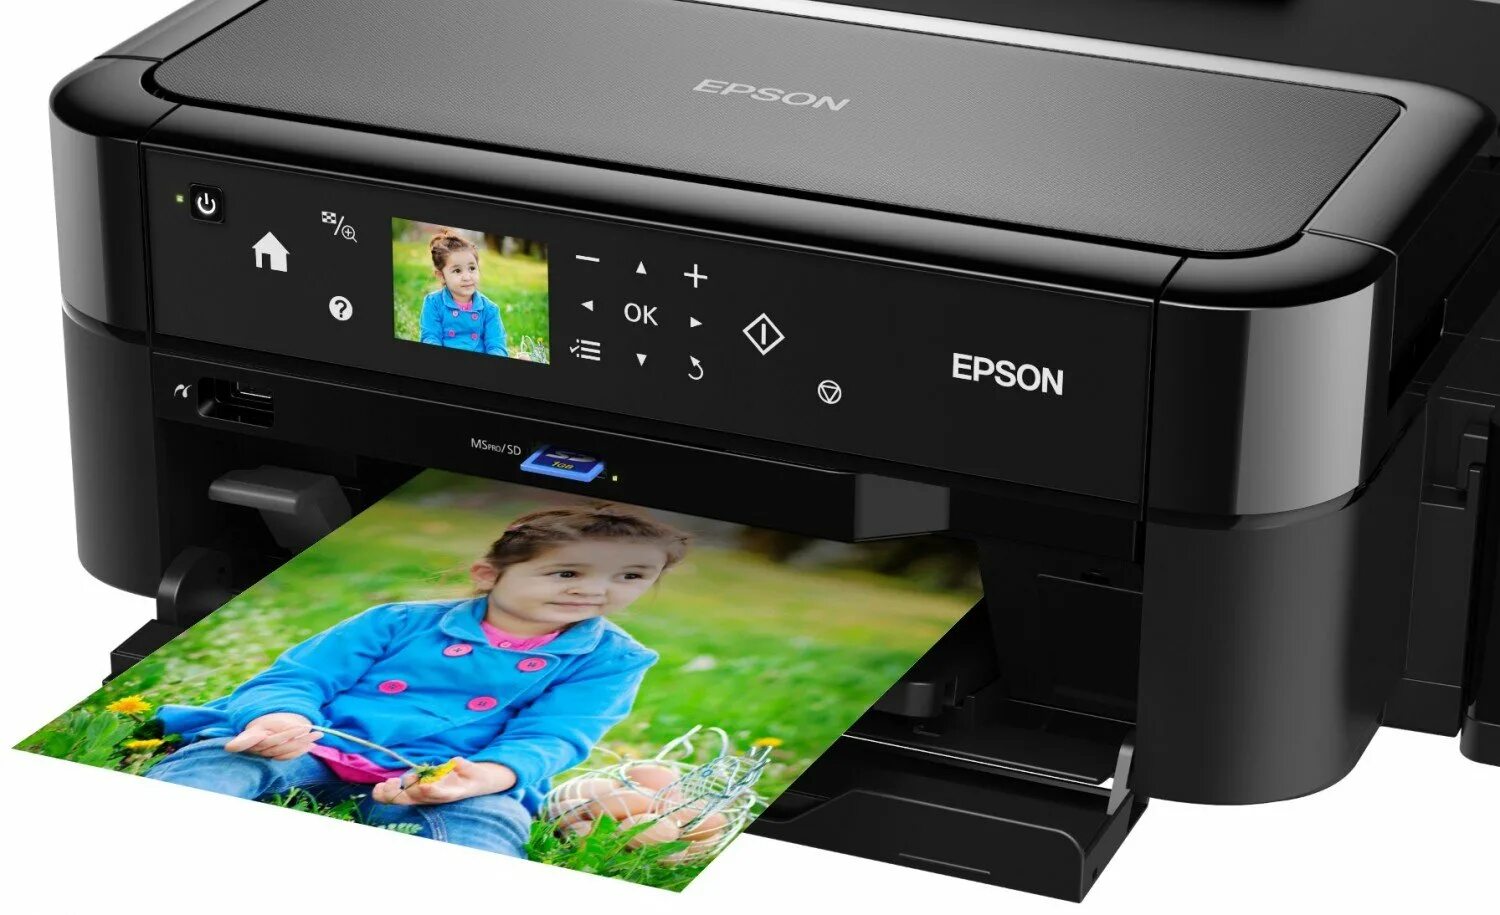 Лазерный принтер максимальное разрешение. Принтер струйный Epson l810. Принтеры Эпсон 810. Epson 810 принтер цветной. Epson принтер Epson l810.